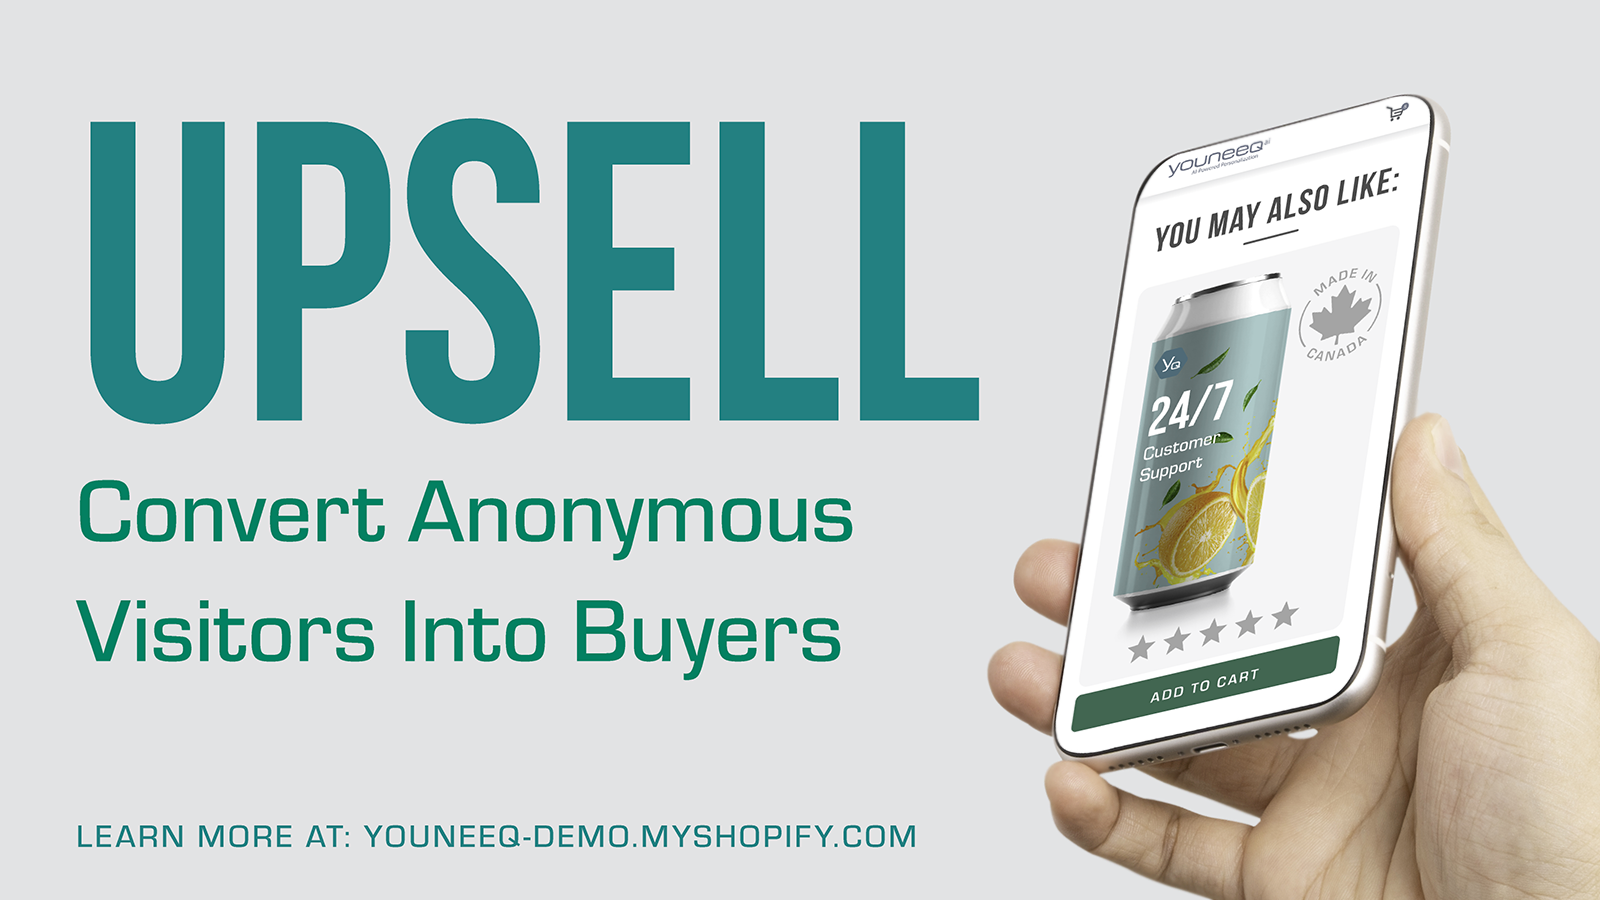 UPSELL - converta clientes anônimos em compradores.